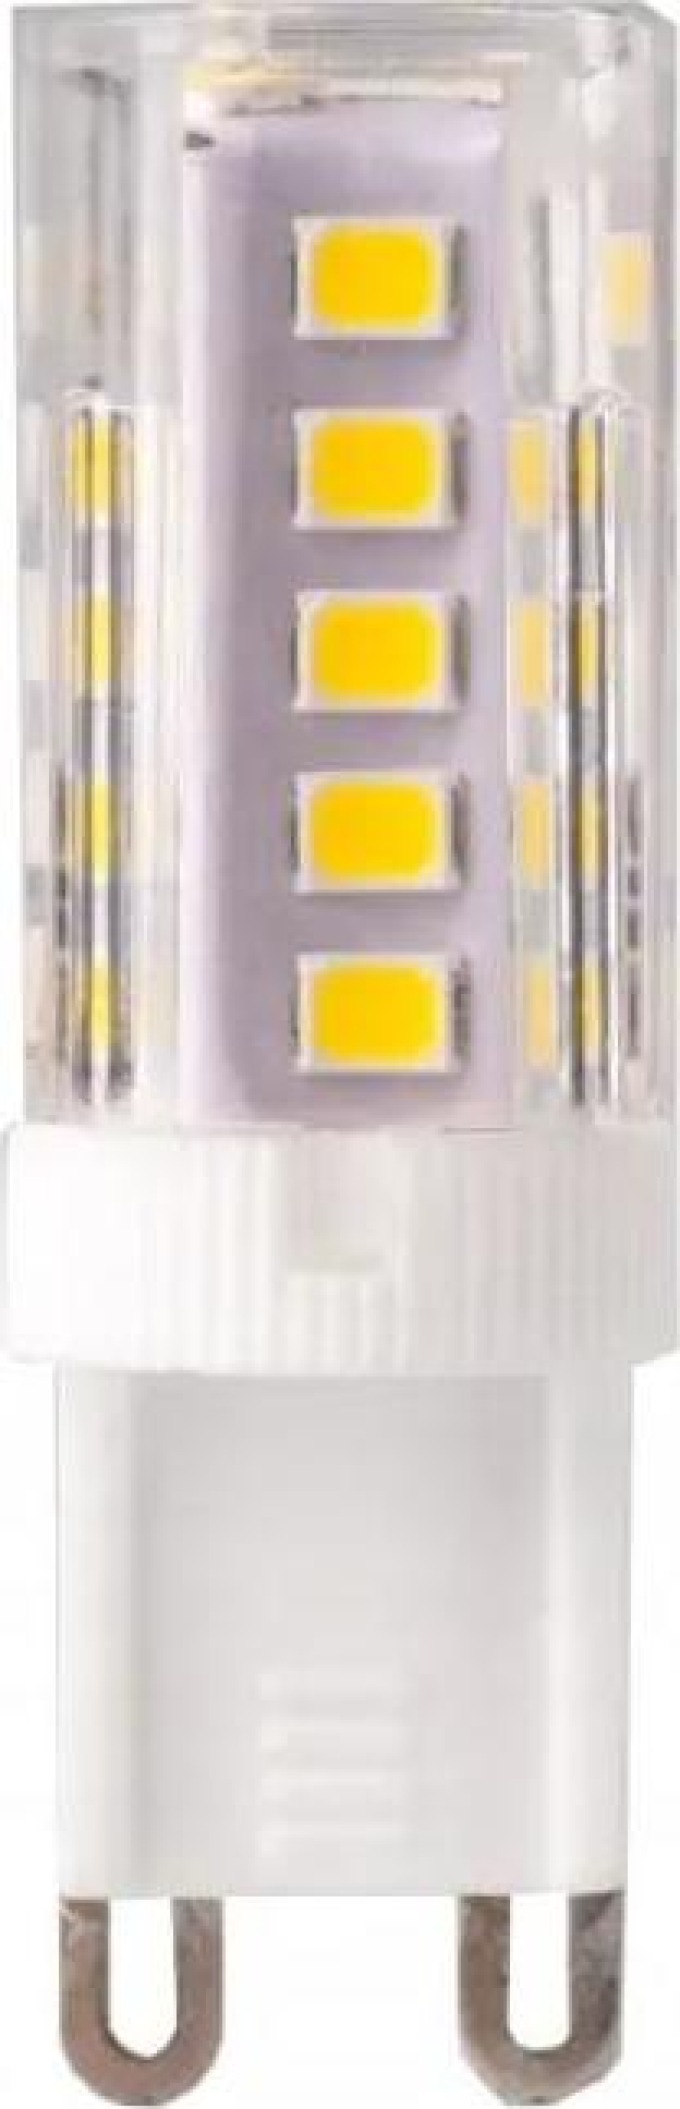 ECOLIGHT LED žárovka - G9 - 3W - teplá bílá